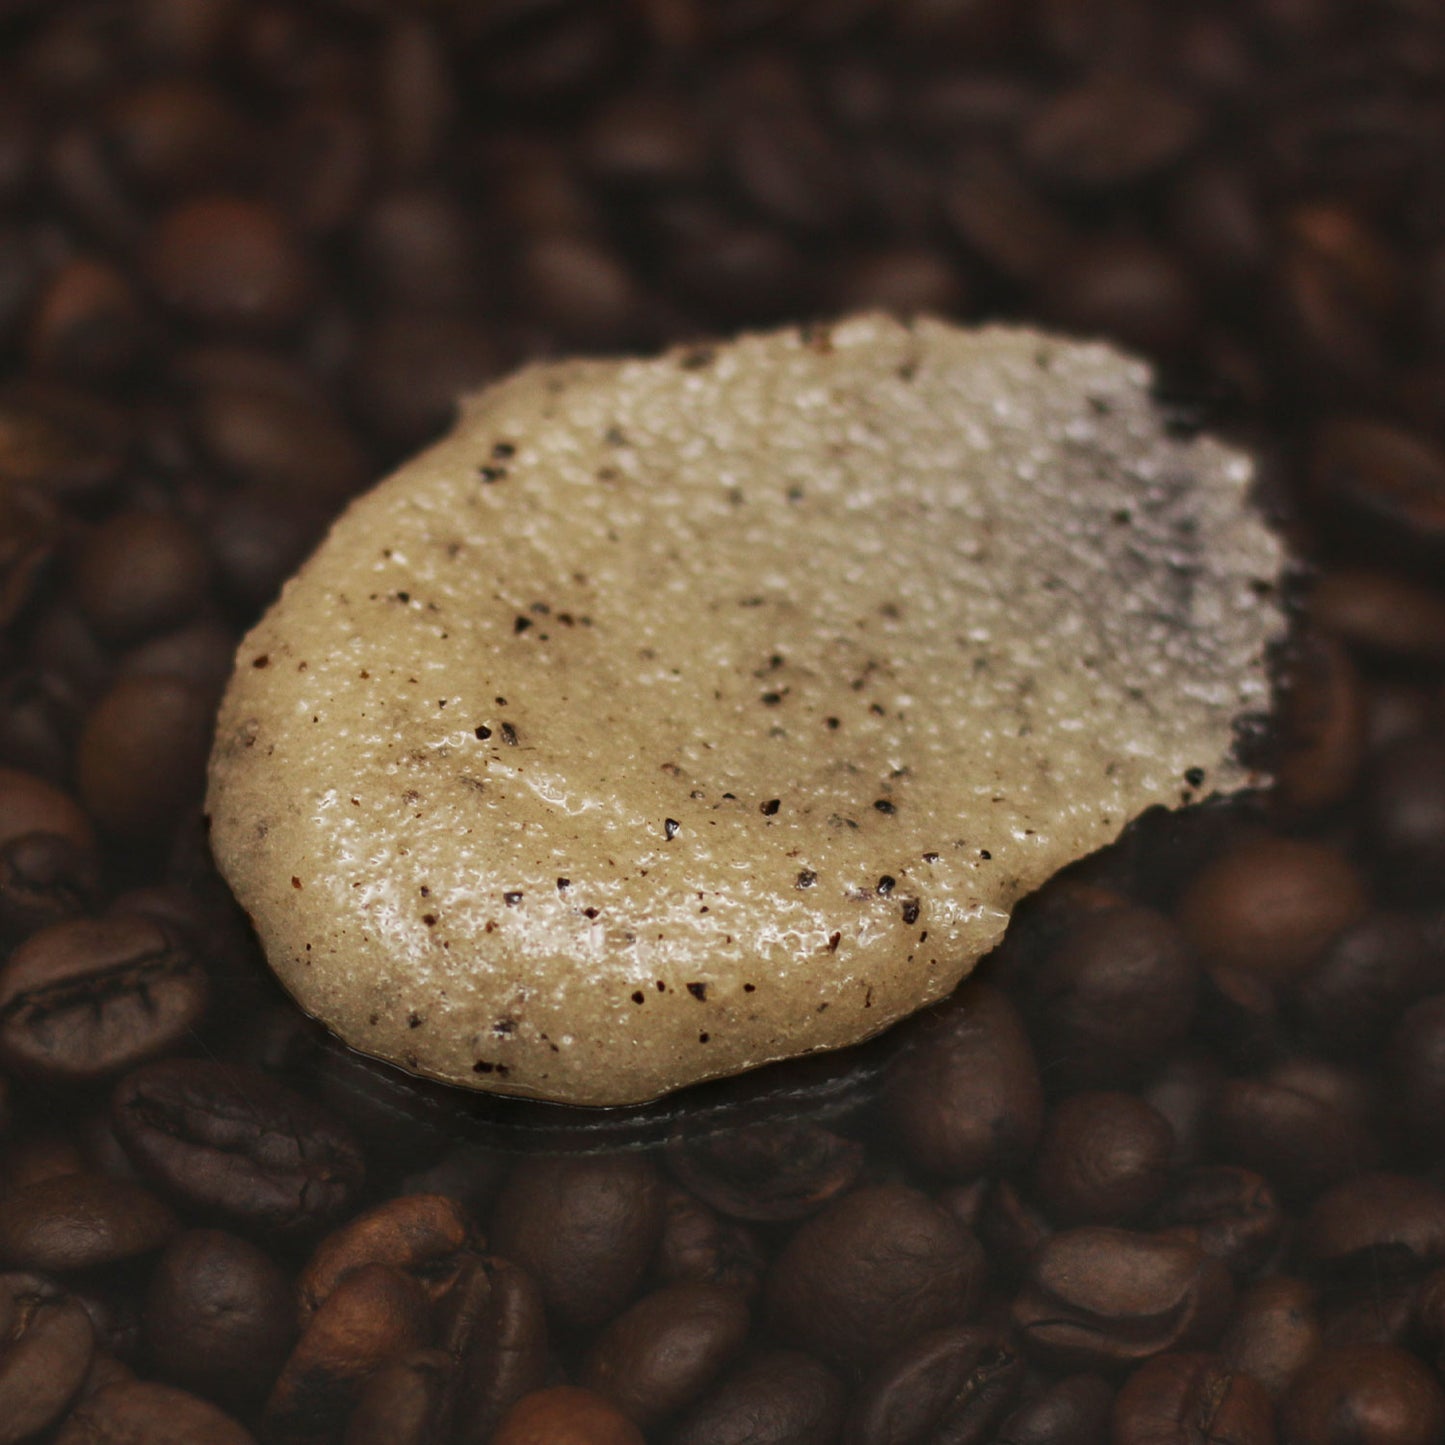 Coffee & Sugar Body Scrub on coffee beans